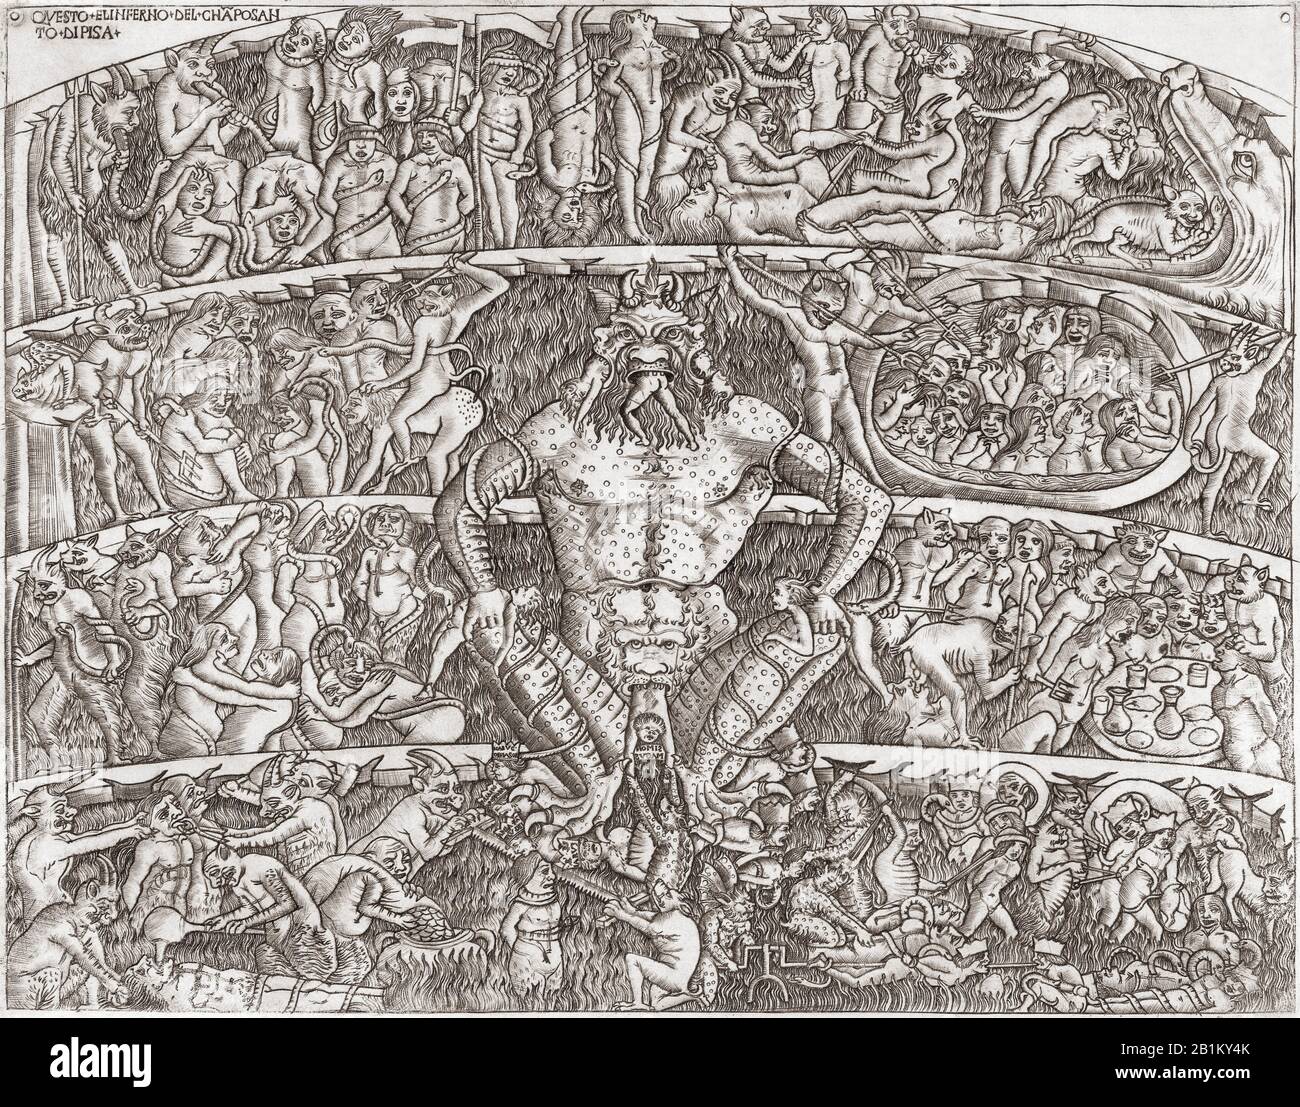 Eine mittelalterliche Vision der Hölle. Der Teufel und seine Assistenten kümmern sich um kürzlich eingetroffene Sünder. Nach einer späteren Version eines anonymen Werks aus dem 15. Jahrhundert. Stockfoto